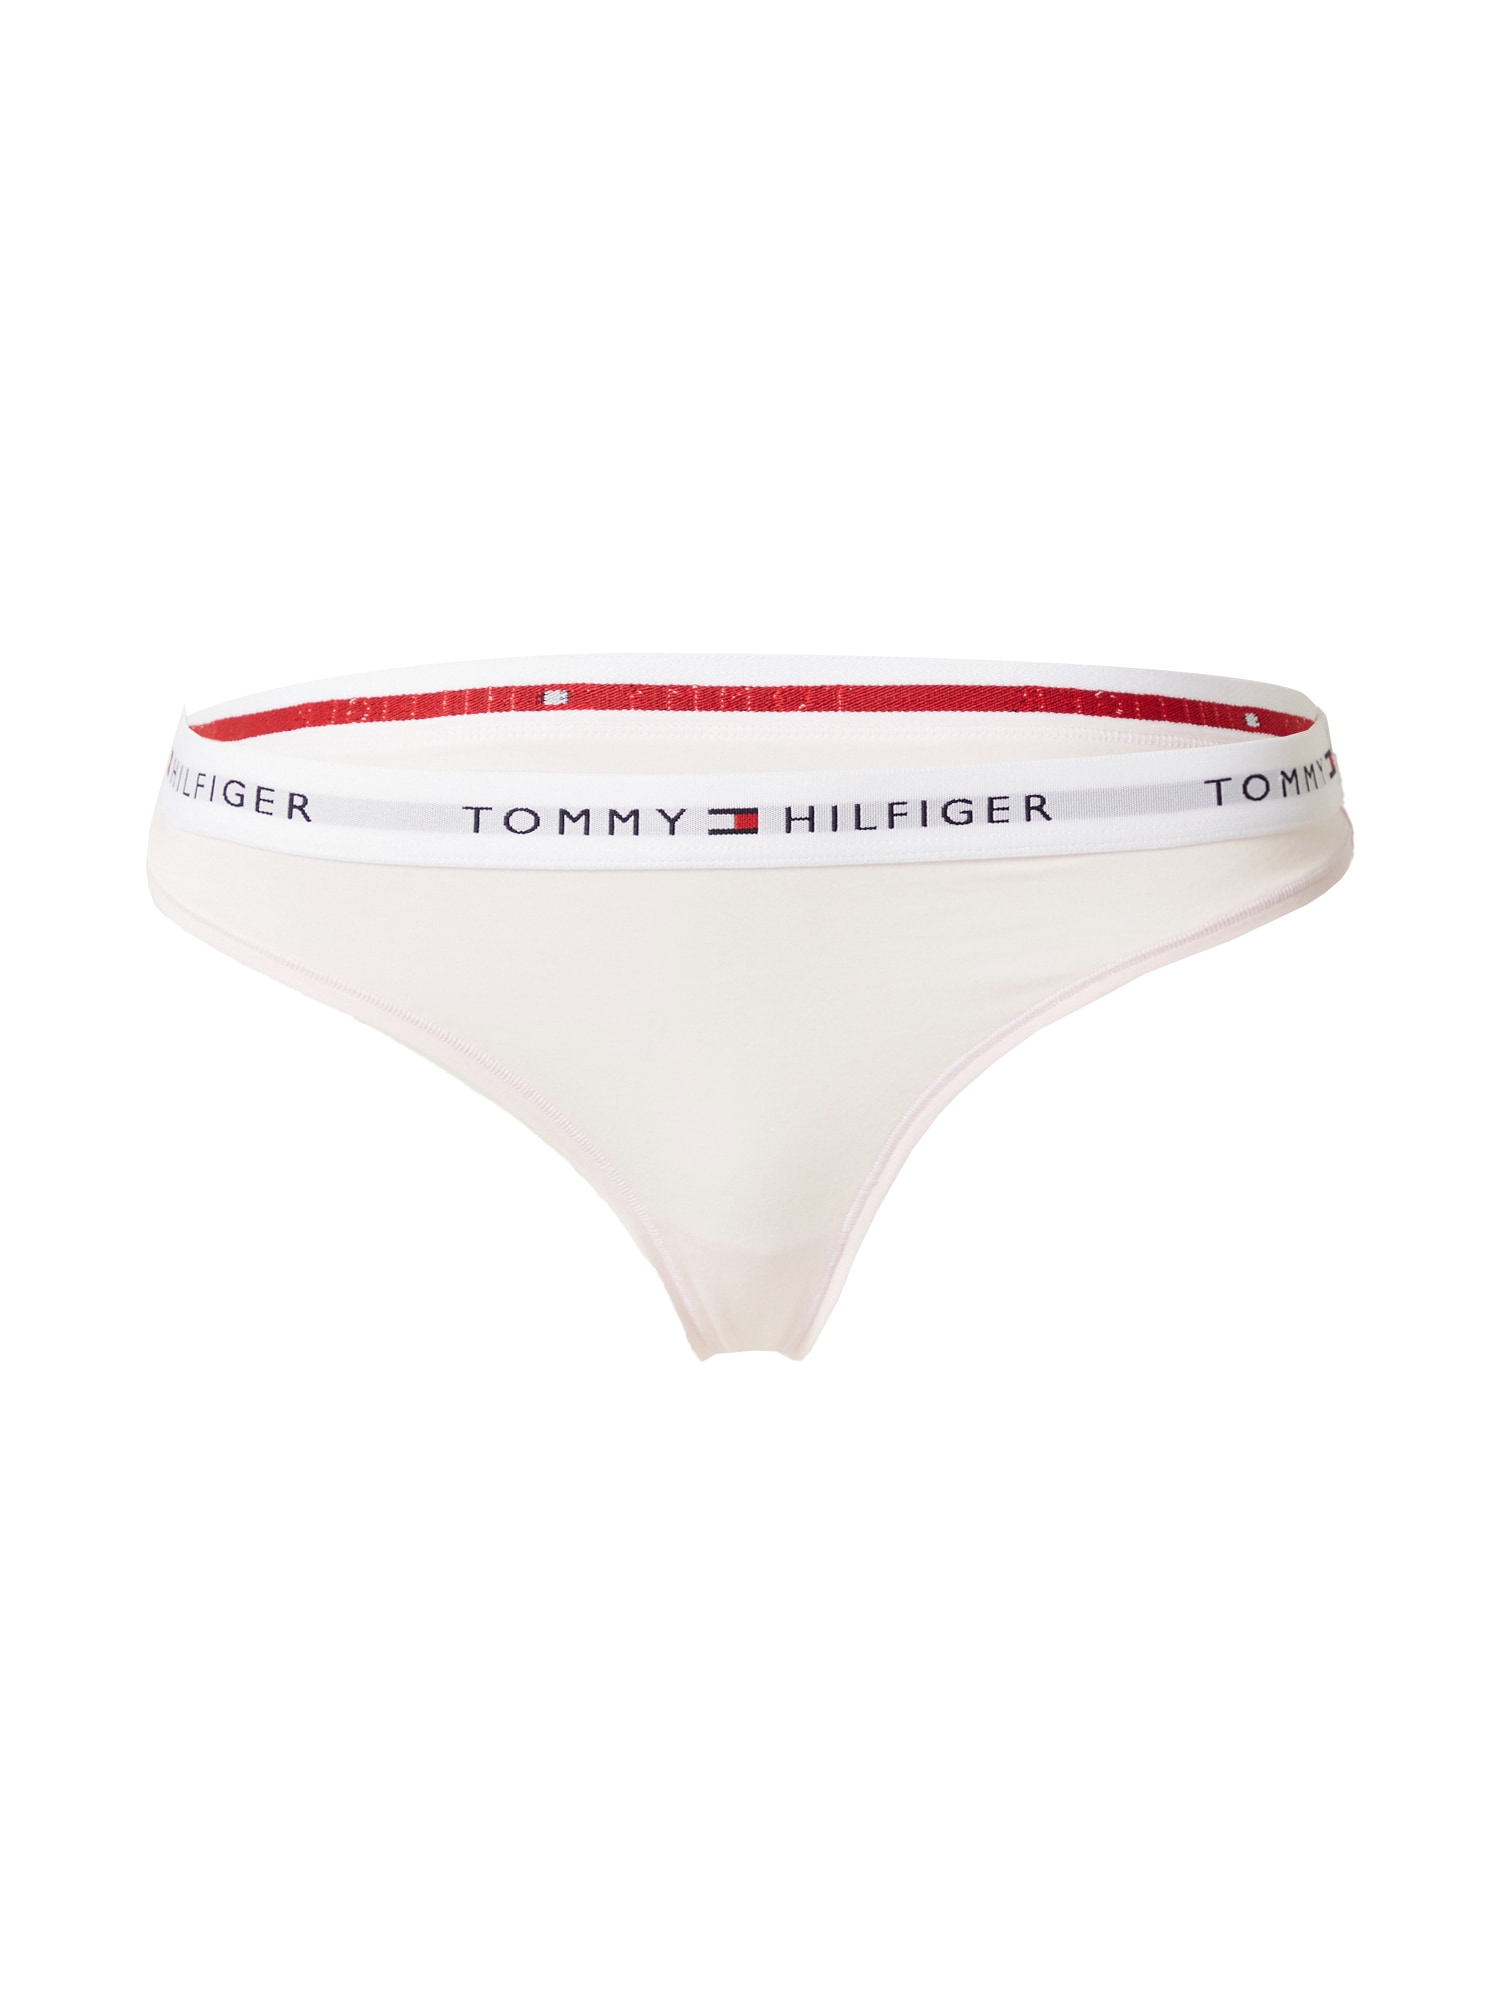 Tangá námornícka modrá pastelovo ružová červená biela Tommy Hilfiger Underwear